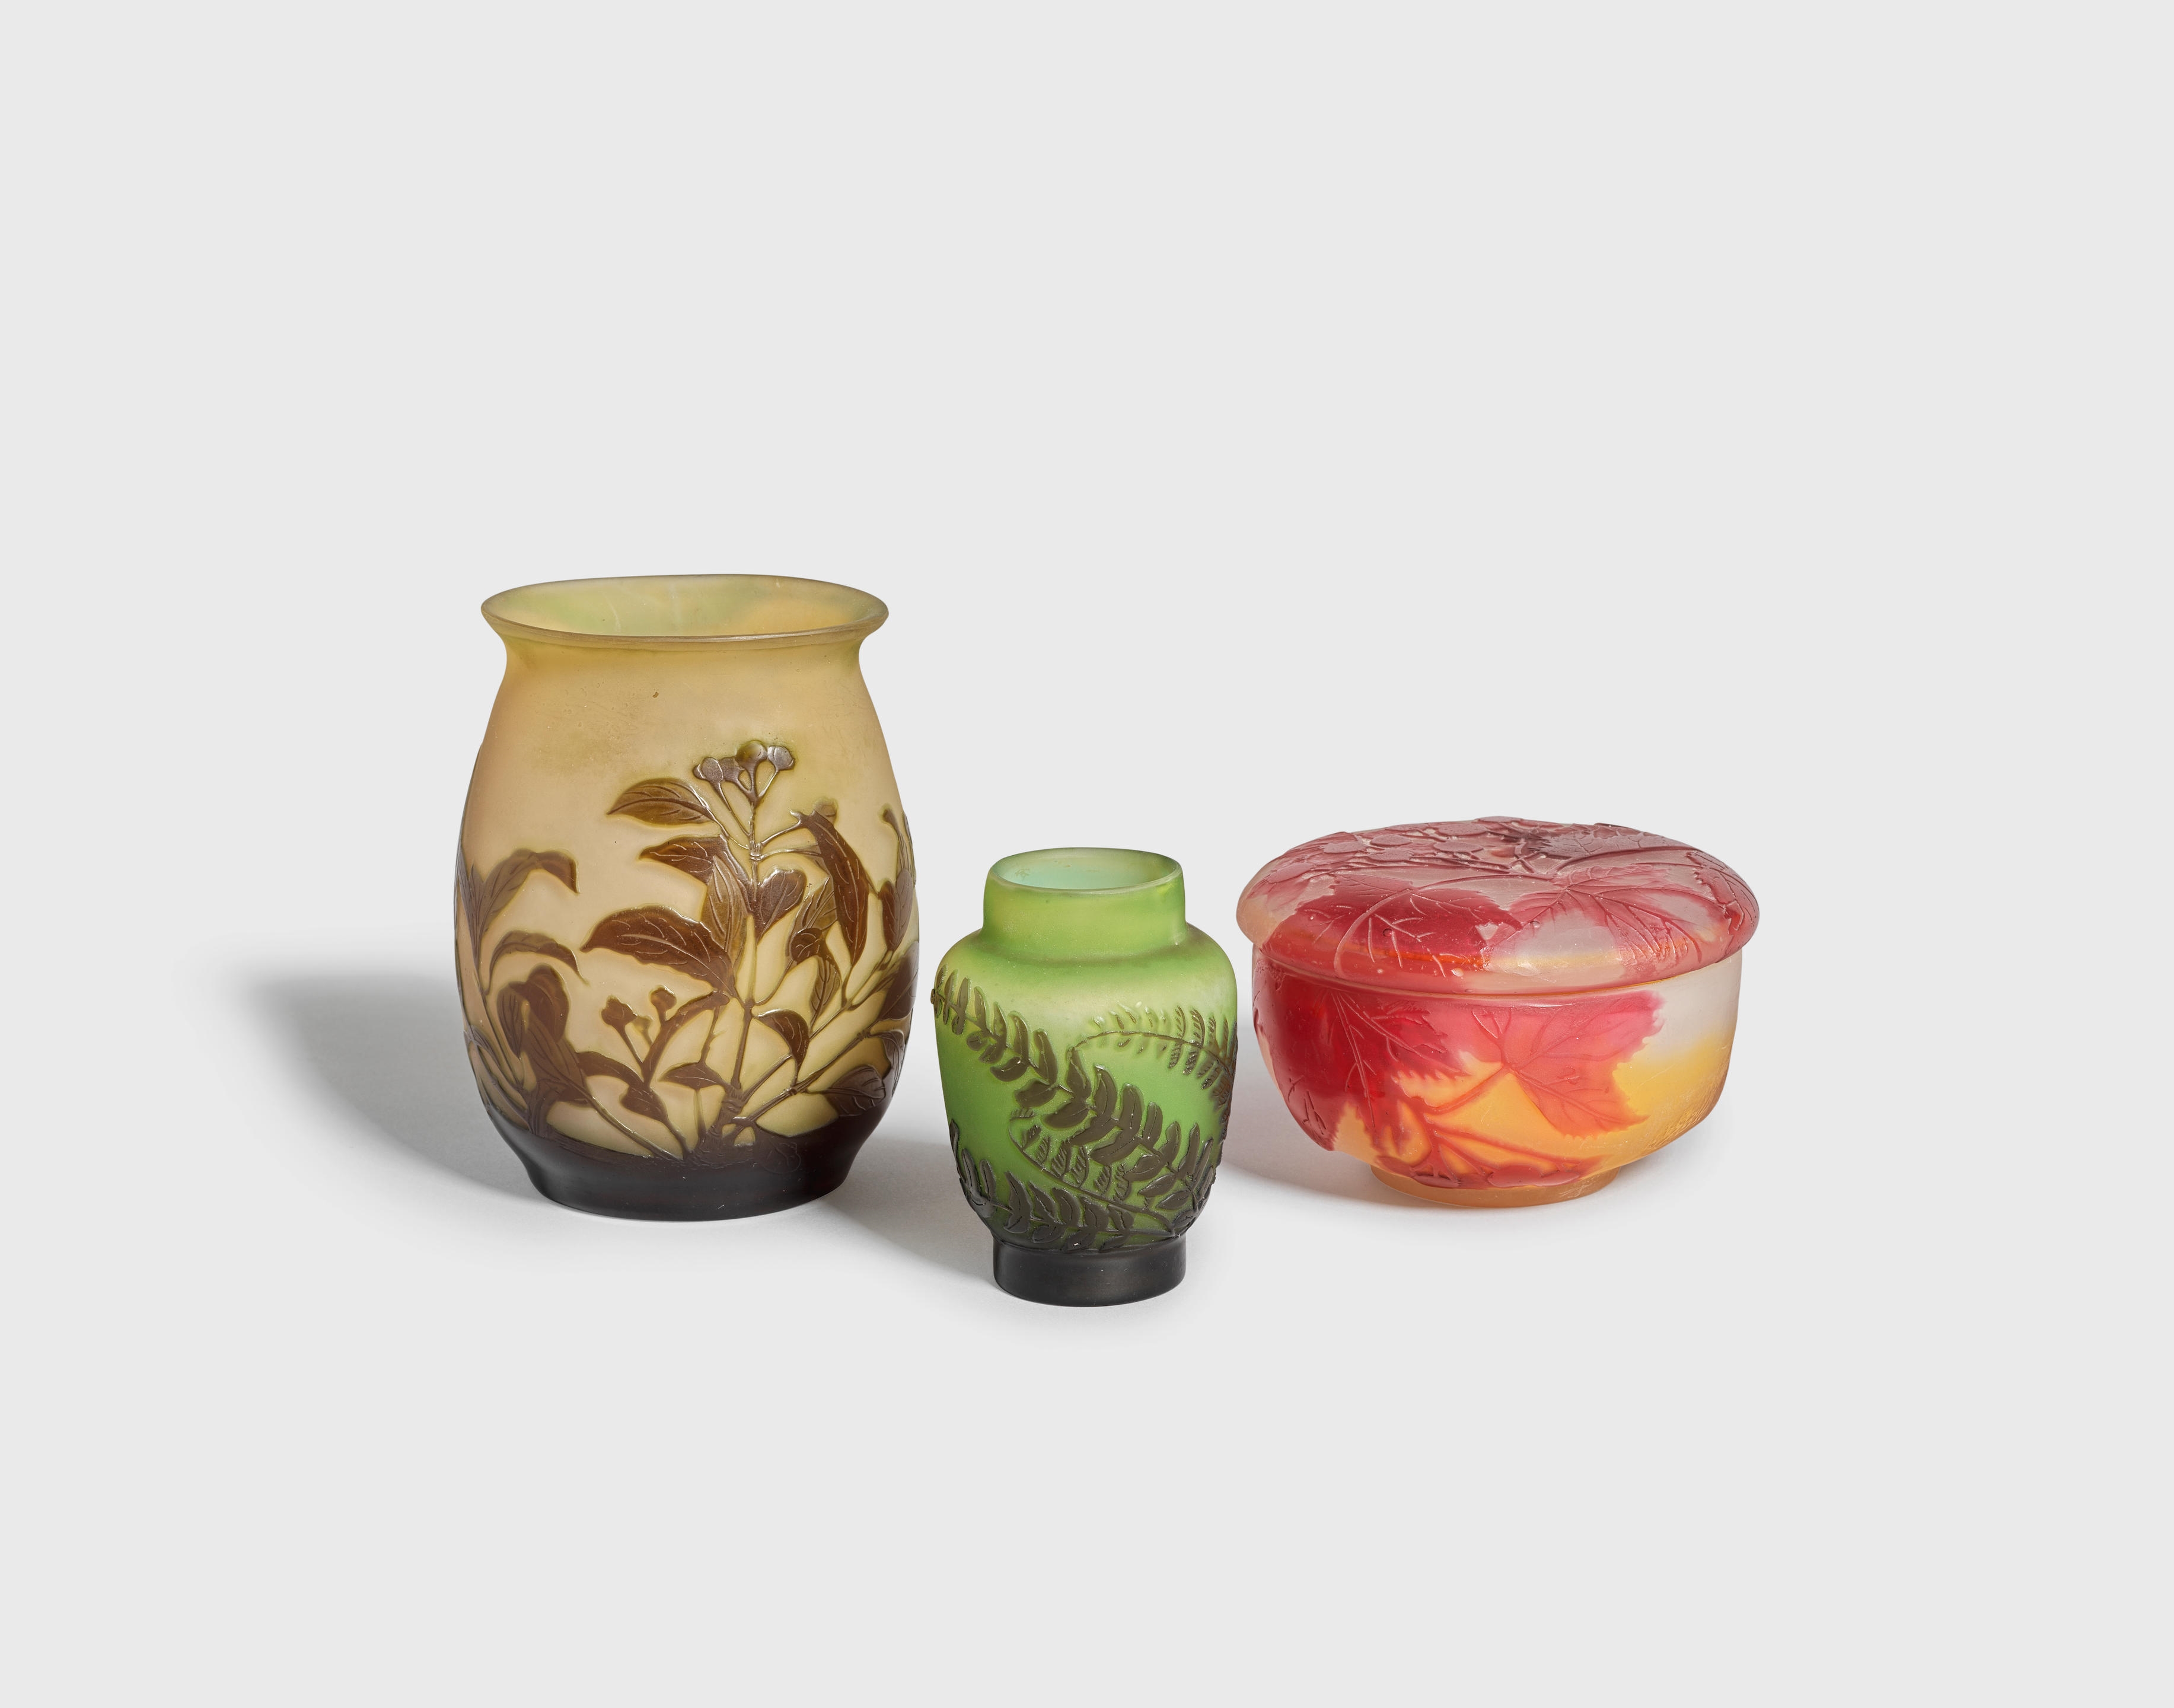 Oval vase, fern vase, and lidded box - Emile Gallé